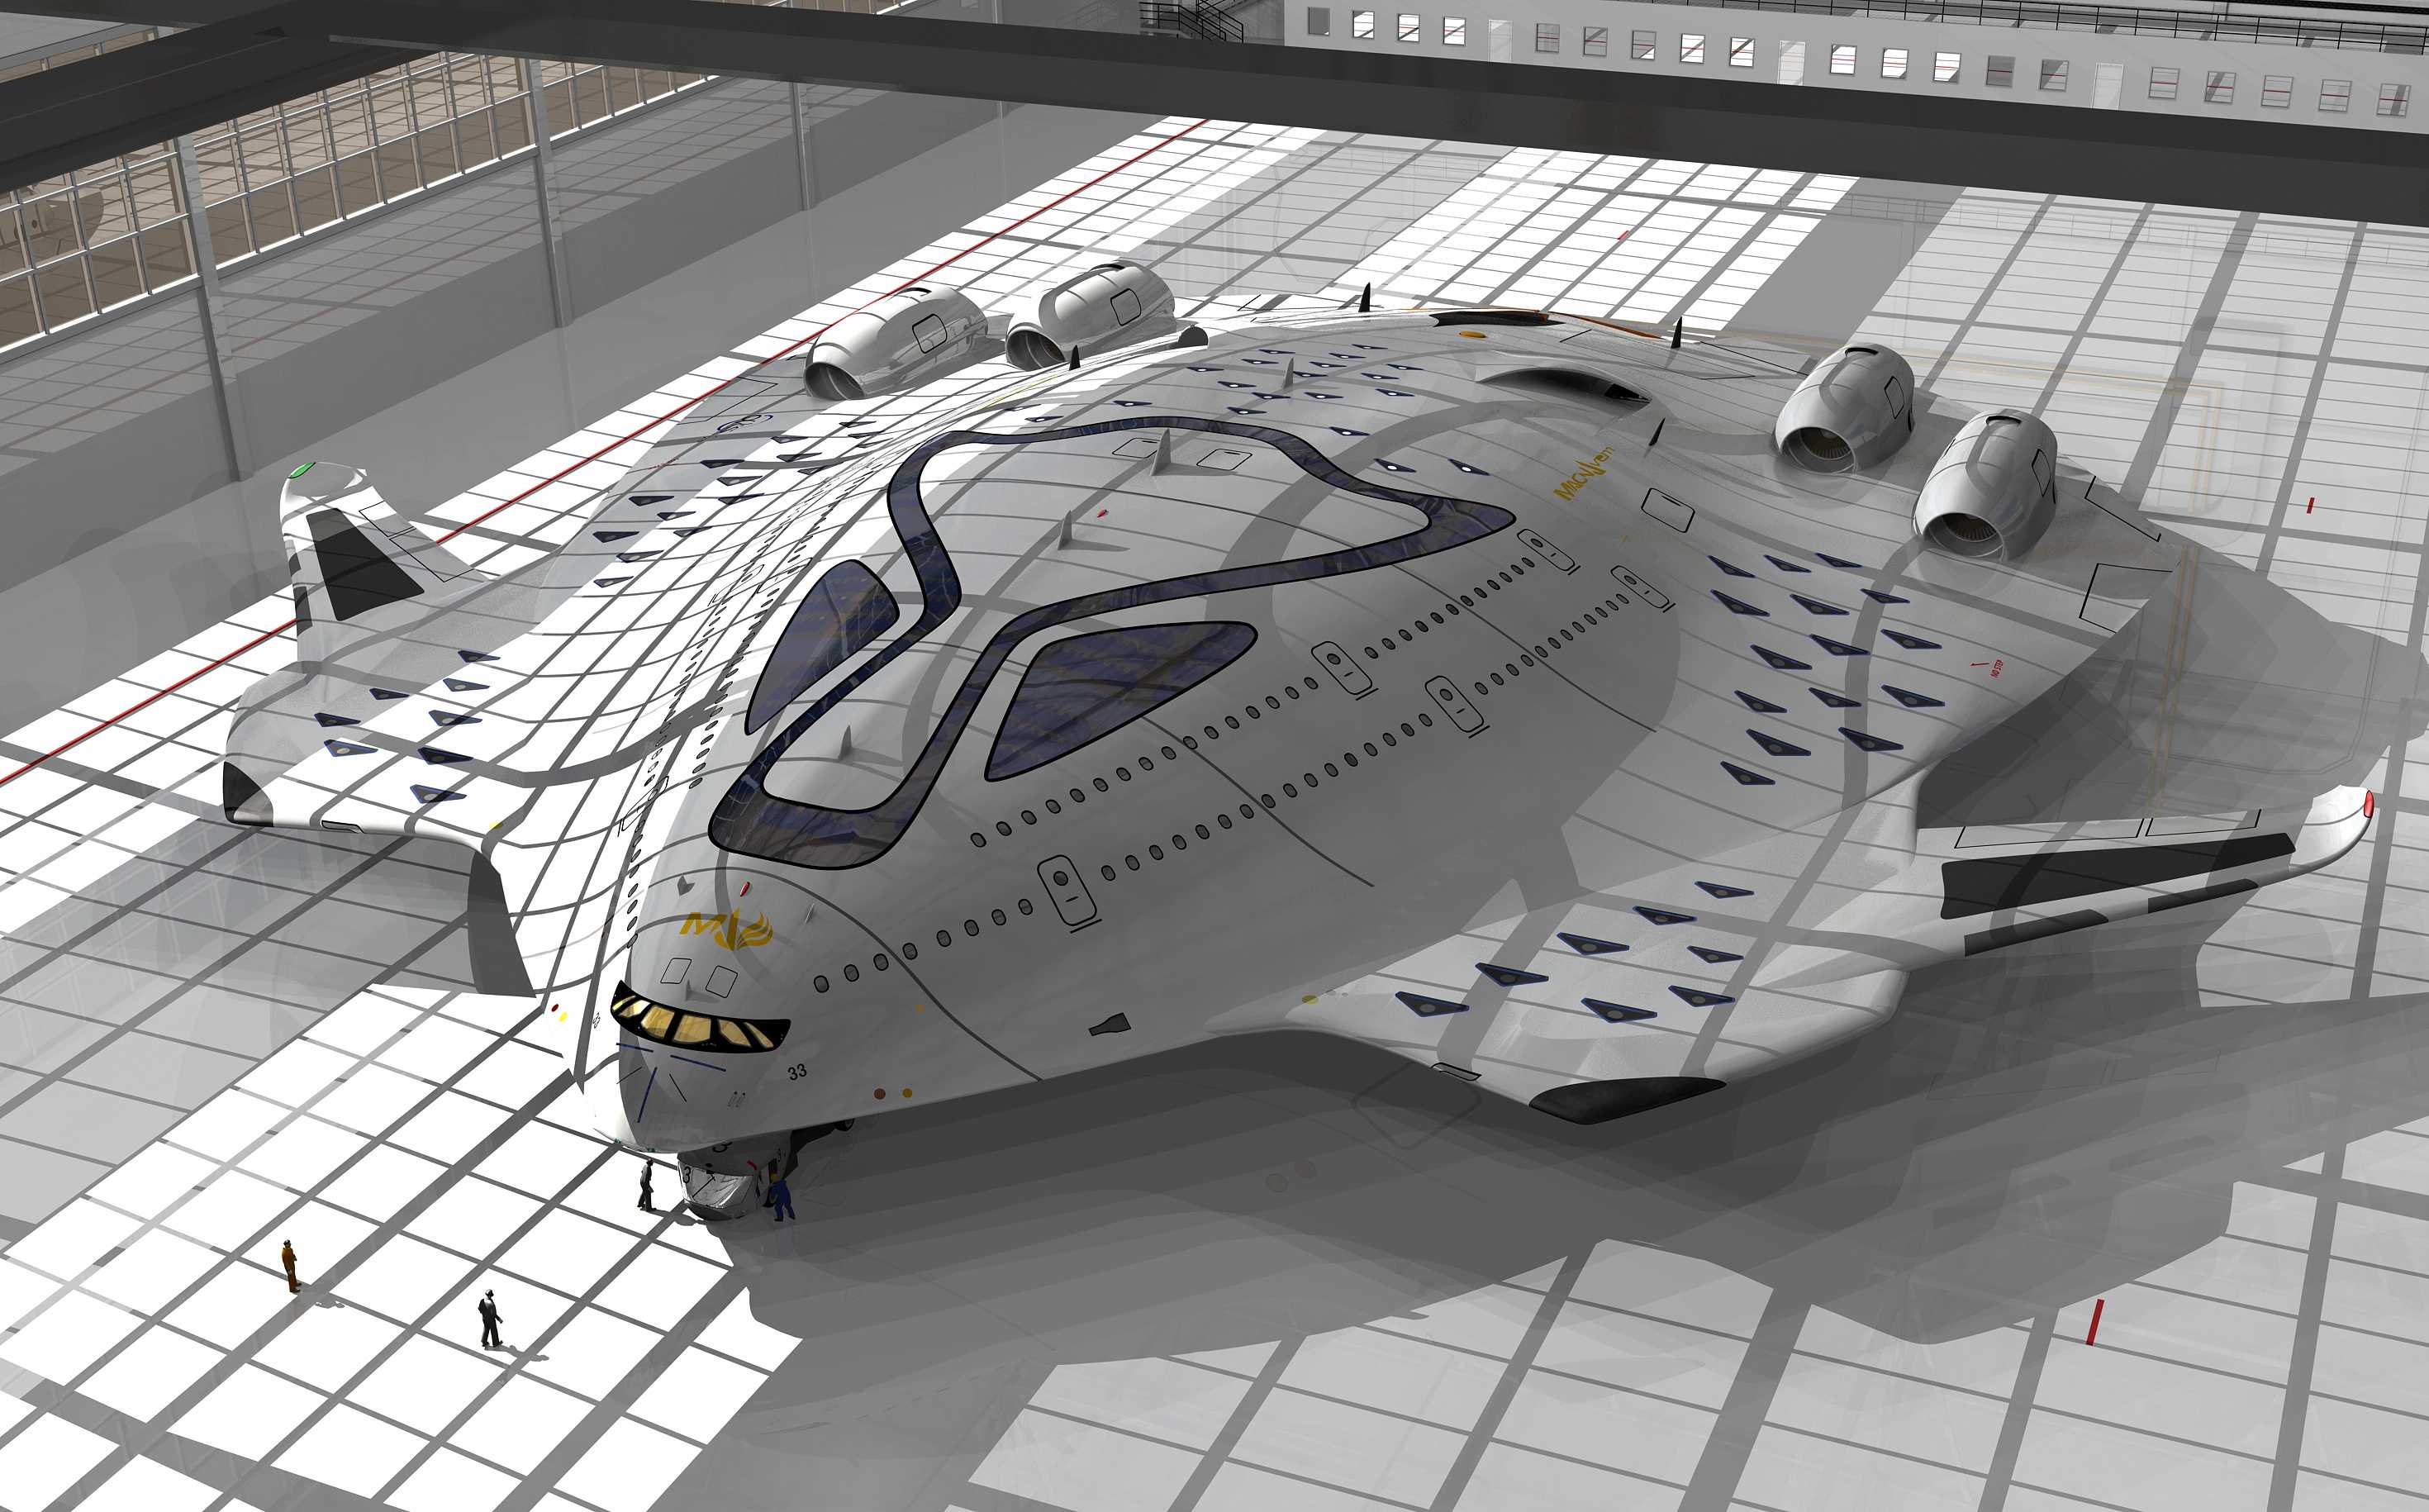 Небесное чудовище: представлен концепт сверхзвукового пассажирского авиалайнера с ядерной силовой установкой